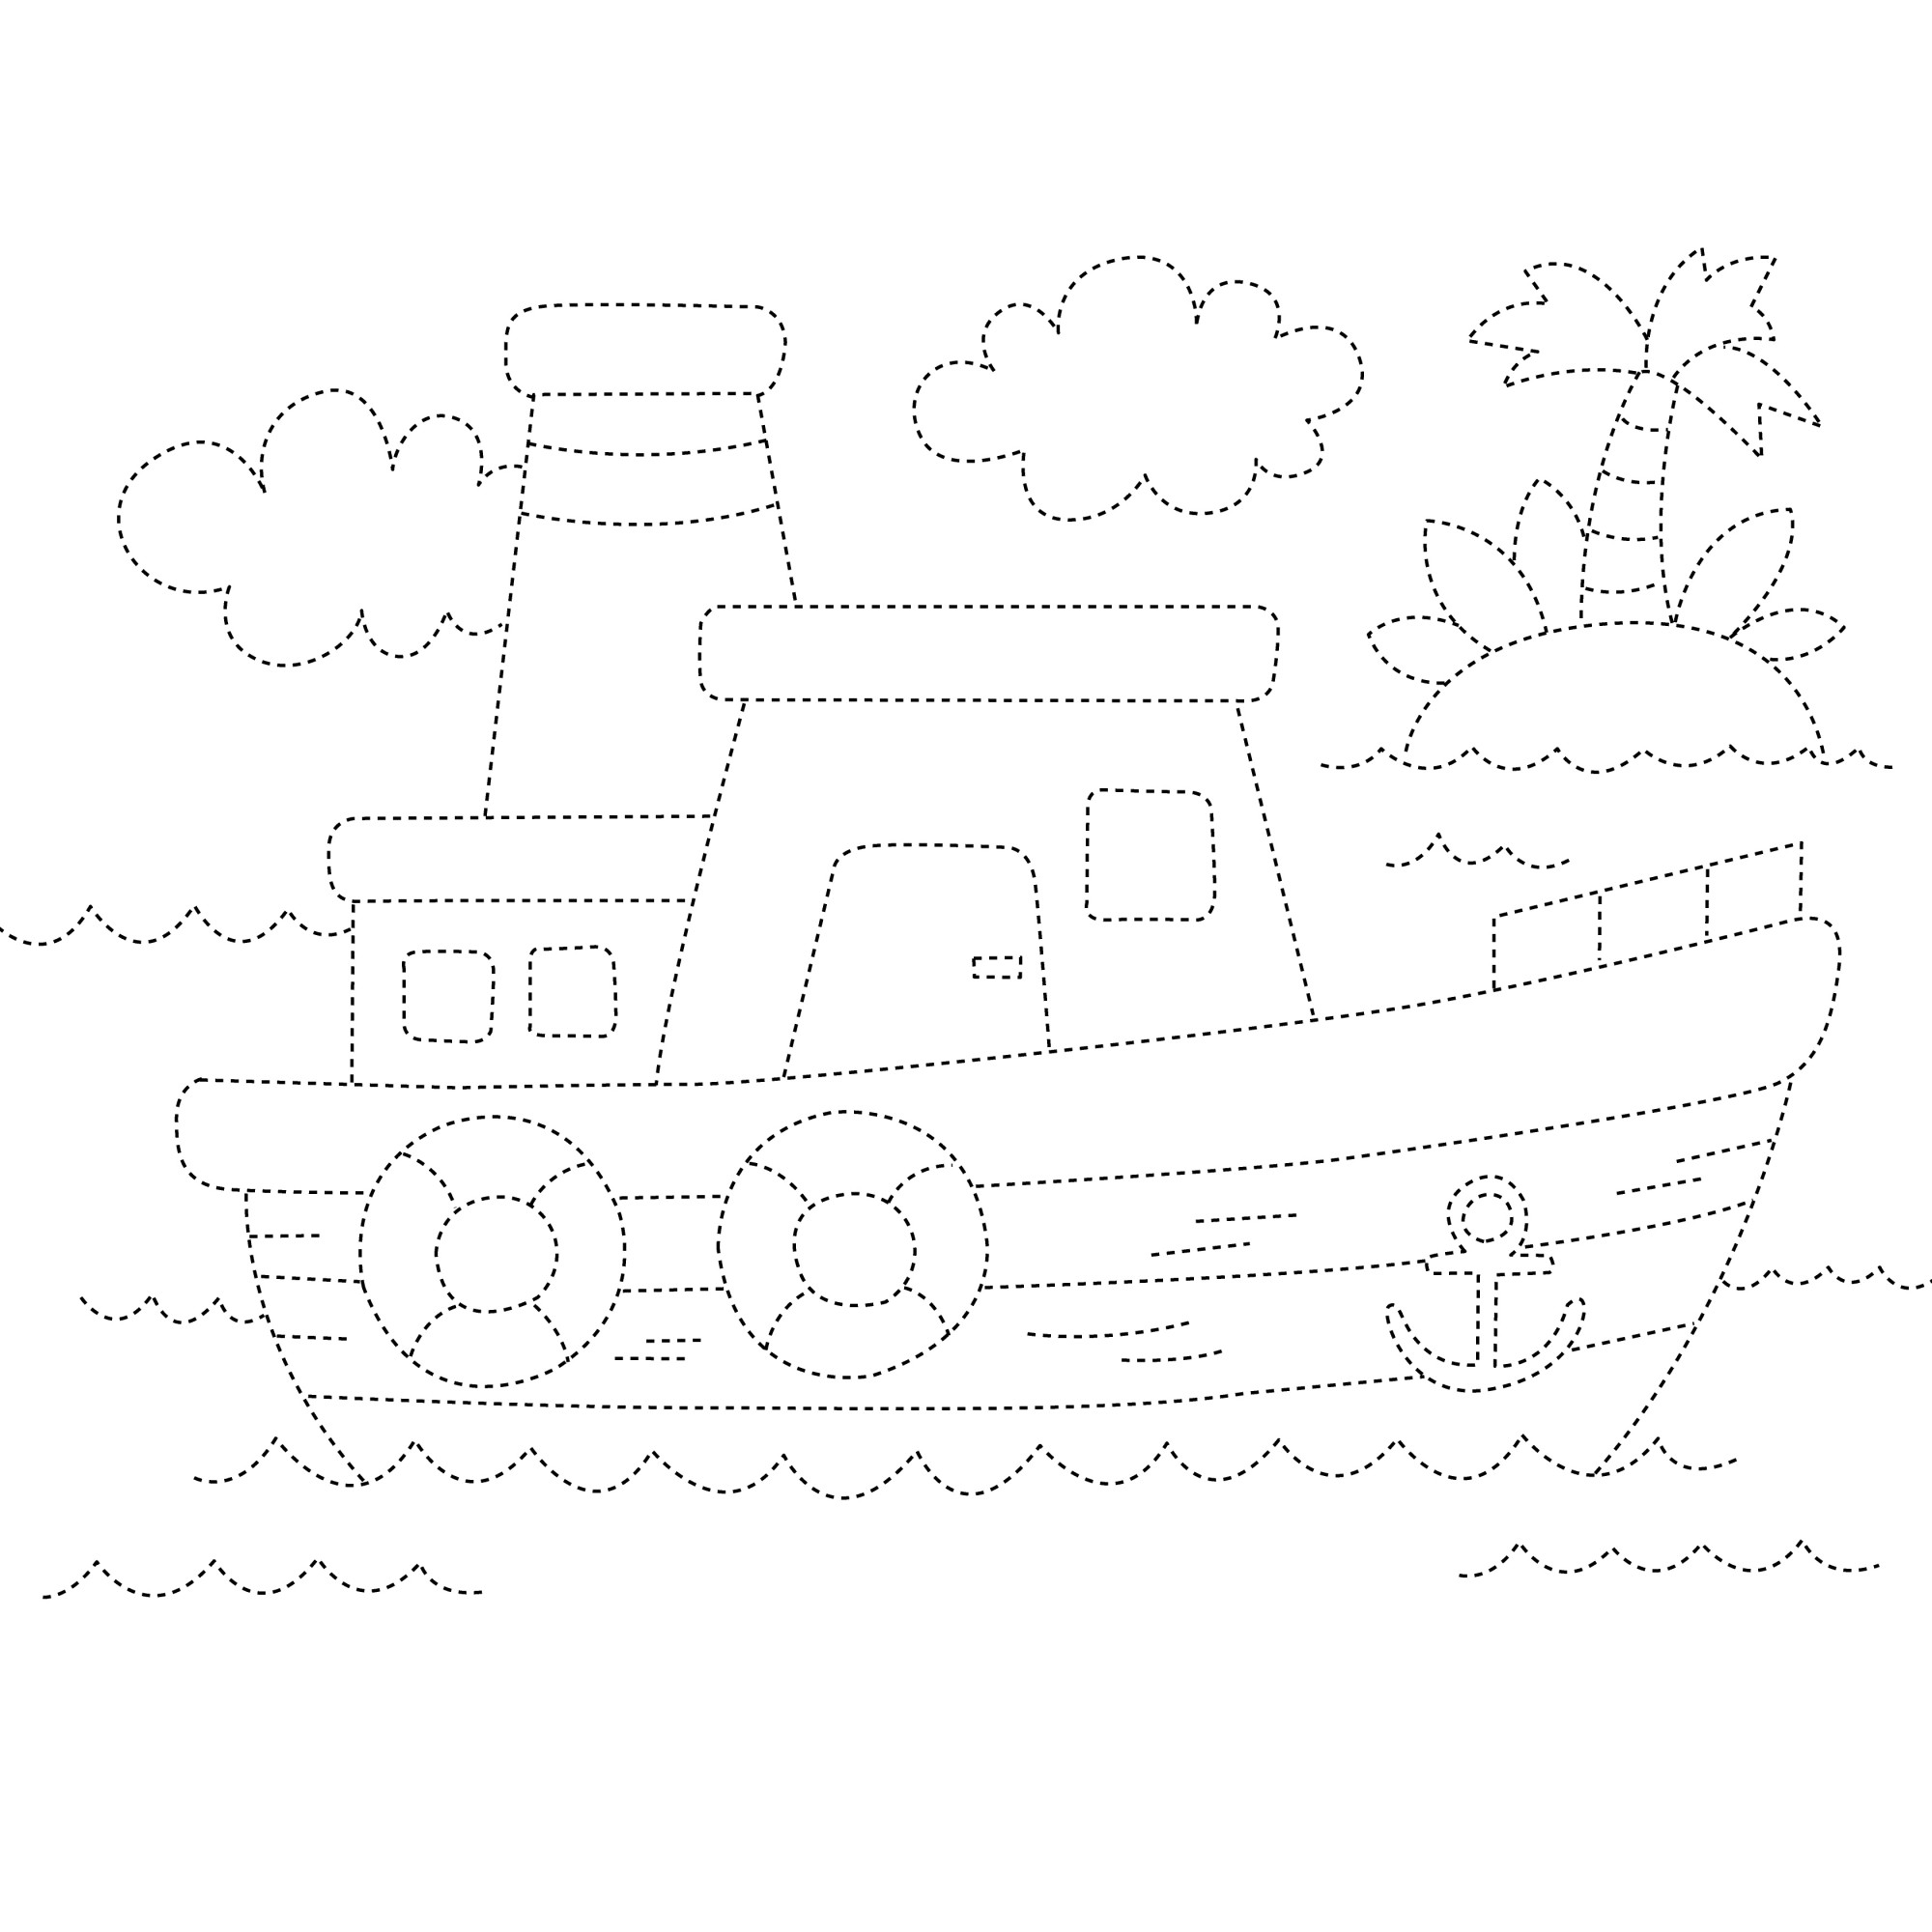 Раскраска для детей: кораблик с якорем в море по точкам